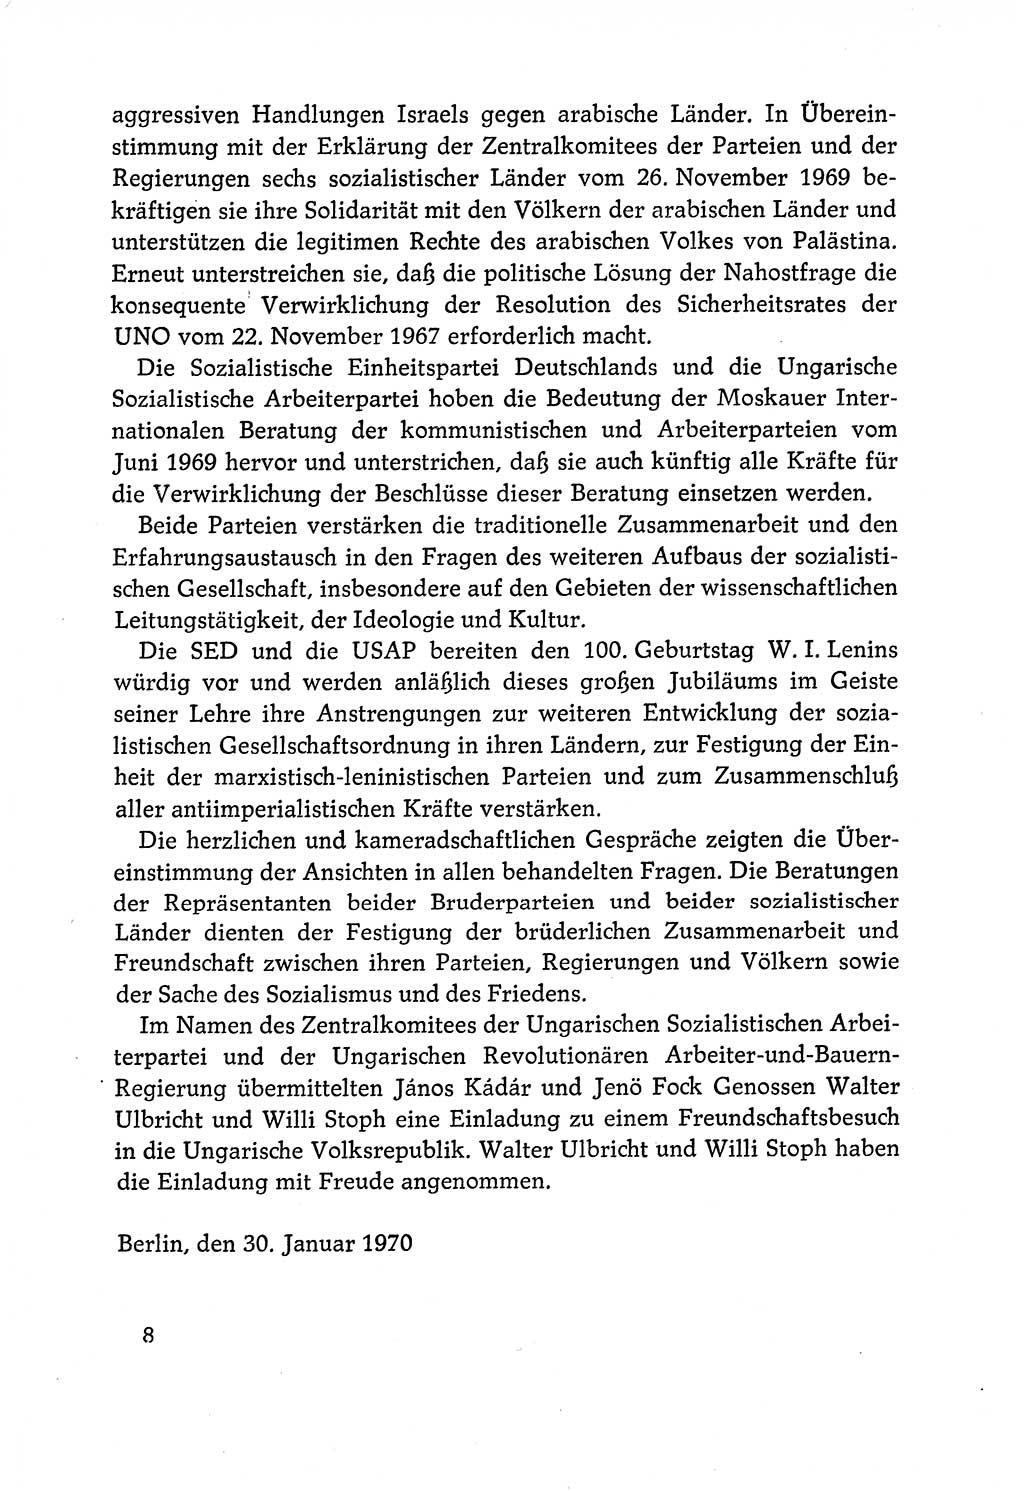 Dokumente der Sozialistischen Einheitspartei Deutschlands (SED) [Deutsche Demokratische Republik (DDR)] 1970-1971, Seite 8 (Dok. SED DDR 1970-1971, S. 8)